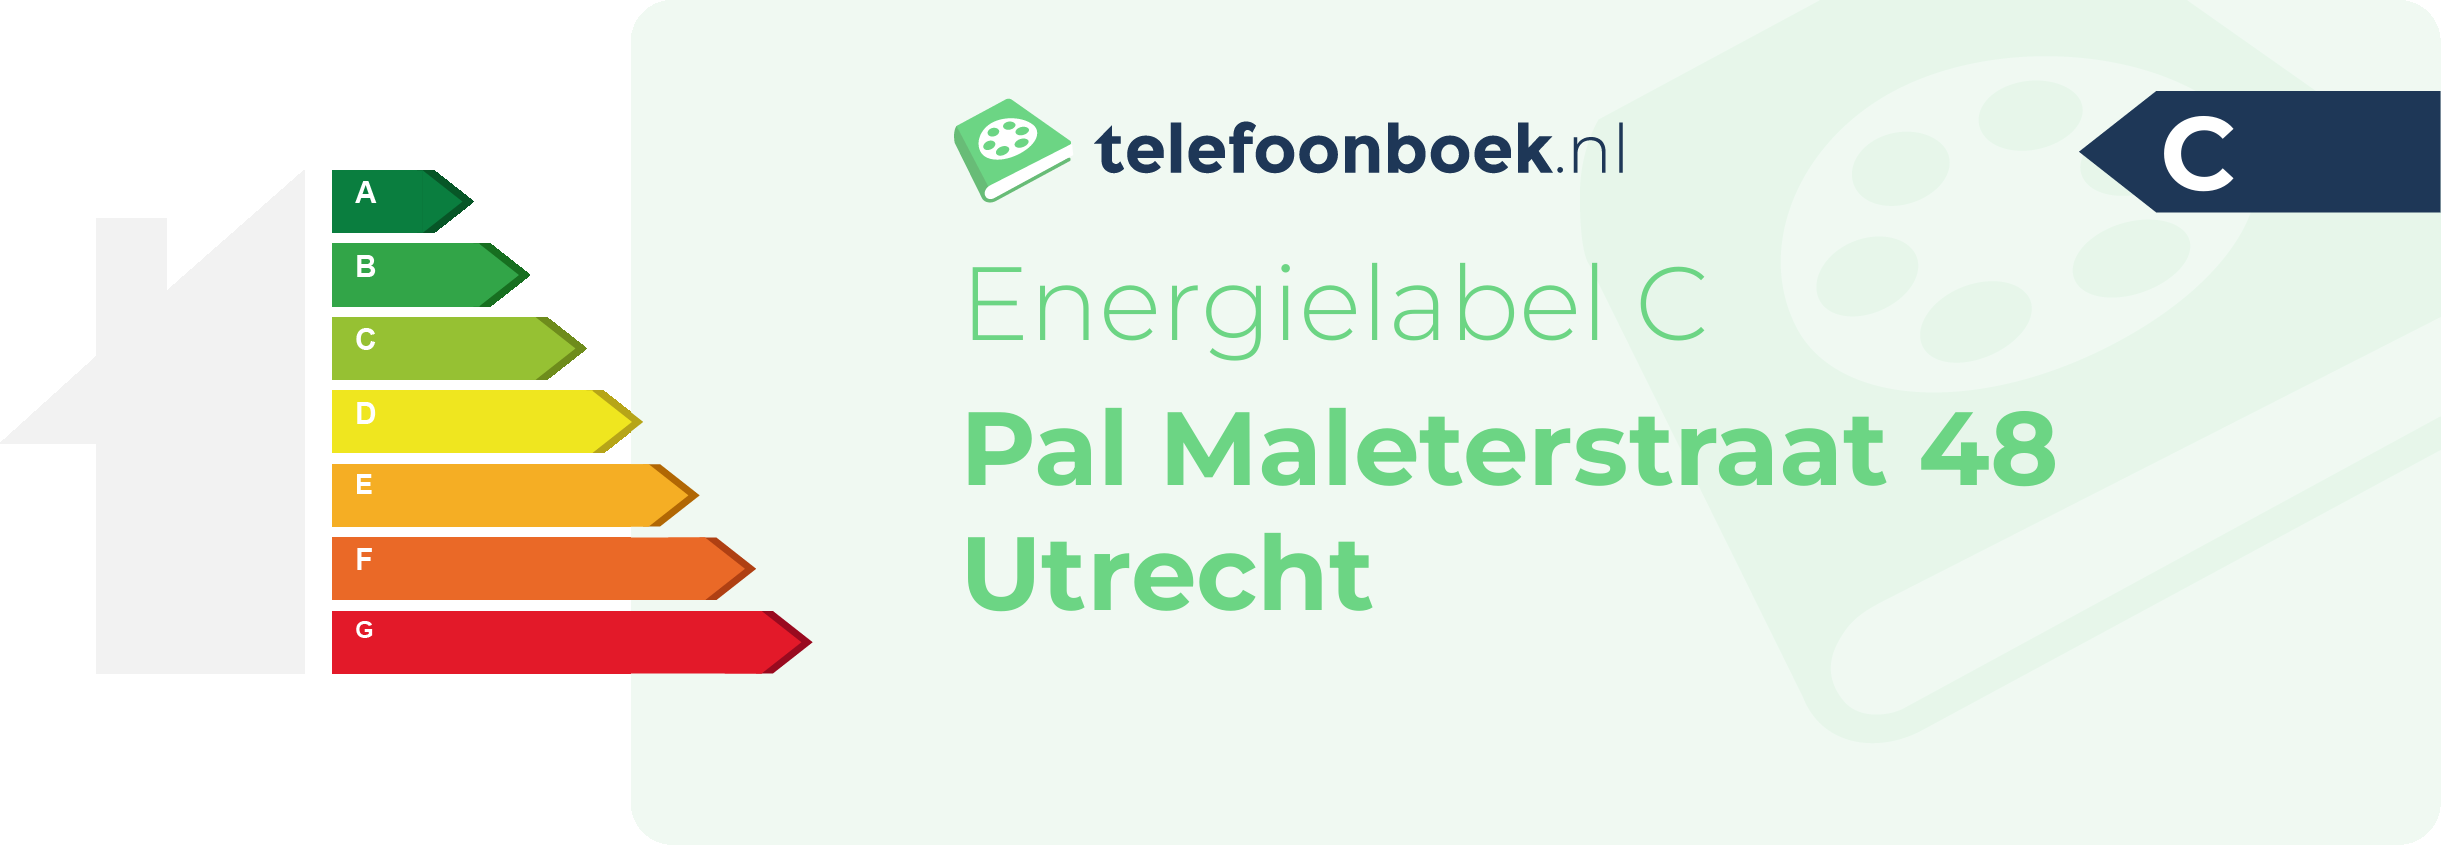 Energielabel Pal Maleterstraat 48 Utrecht